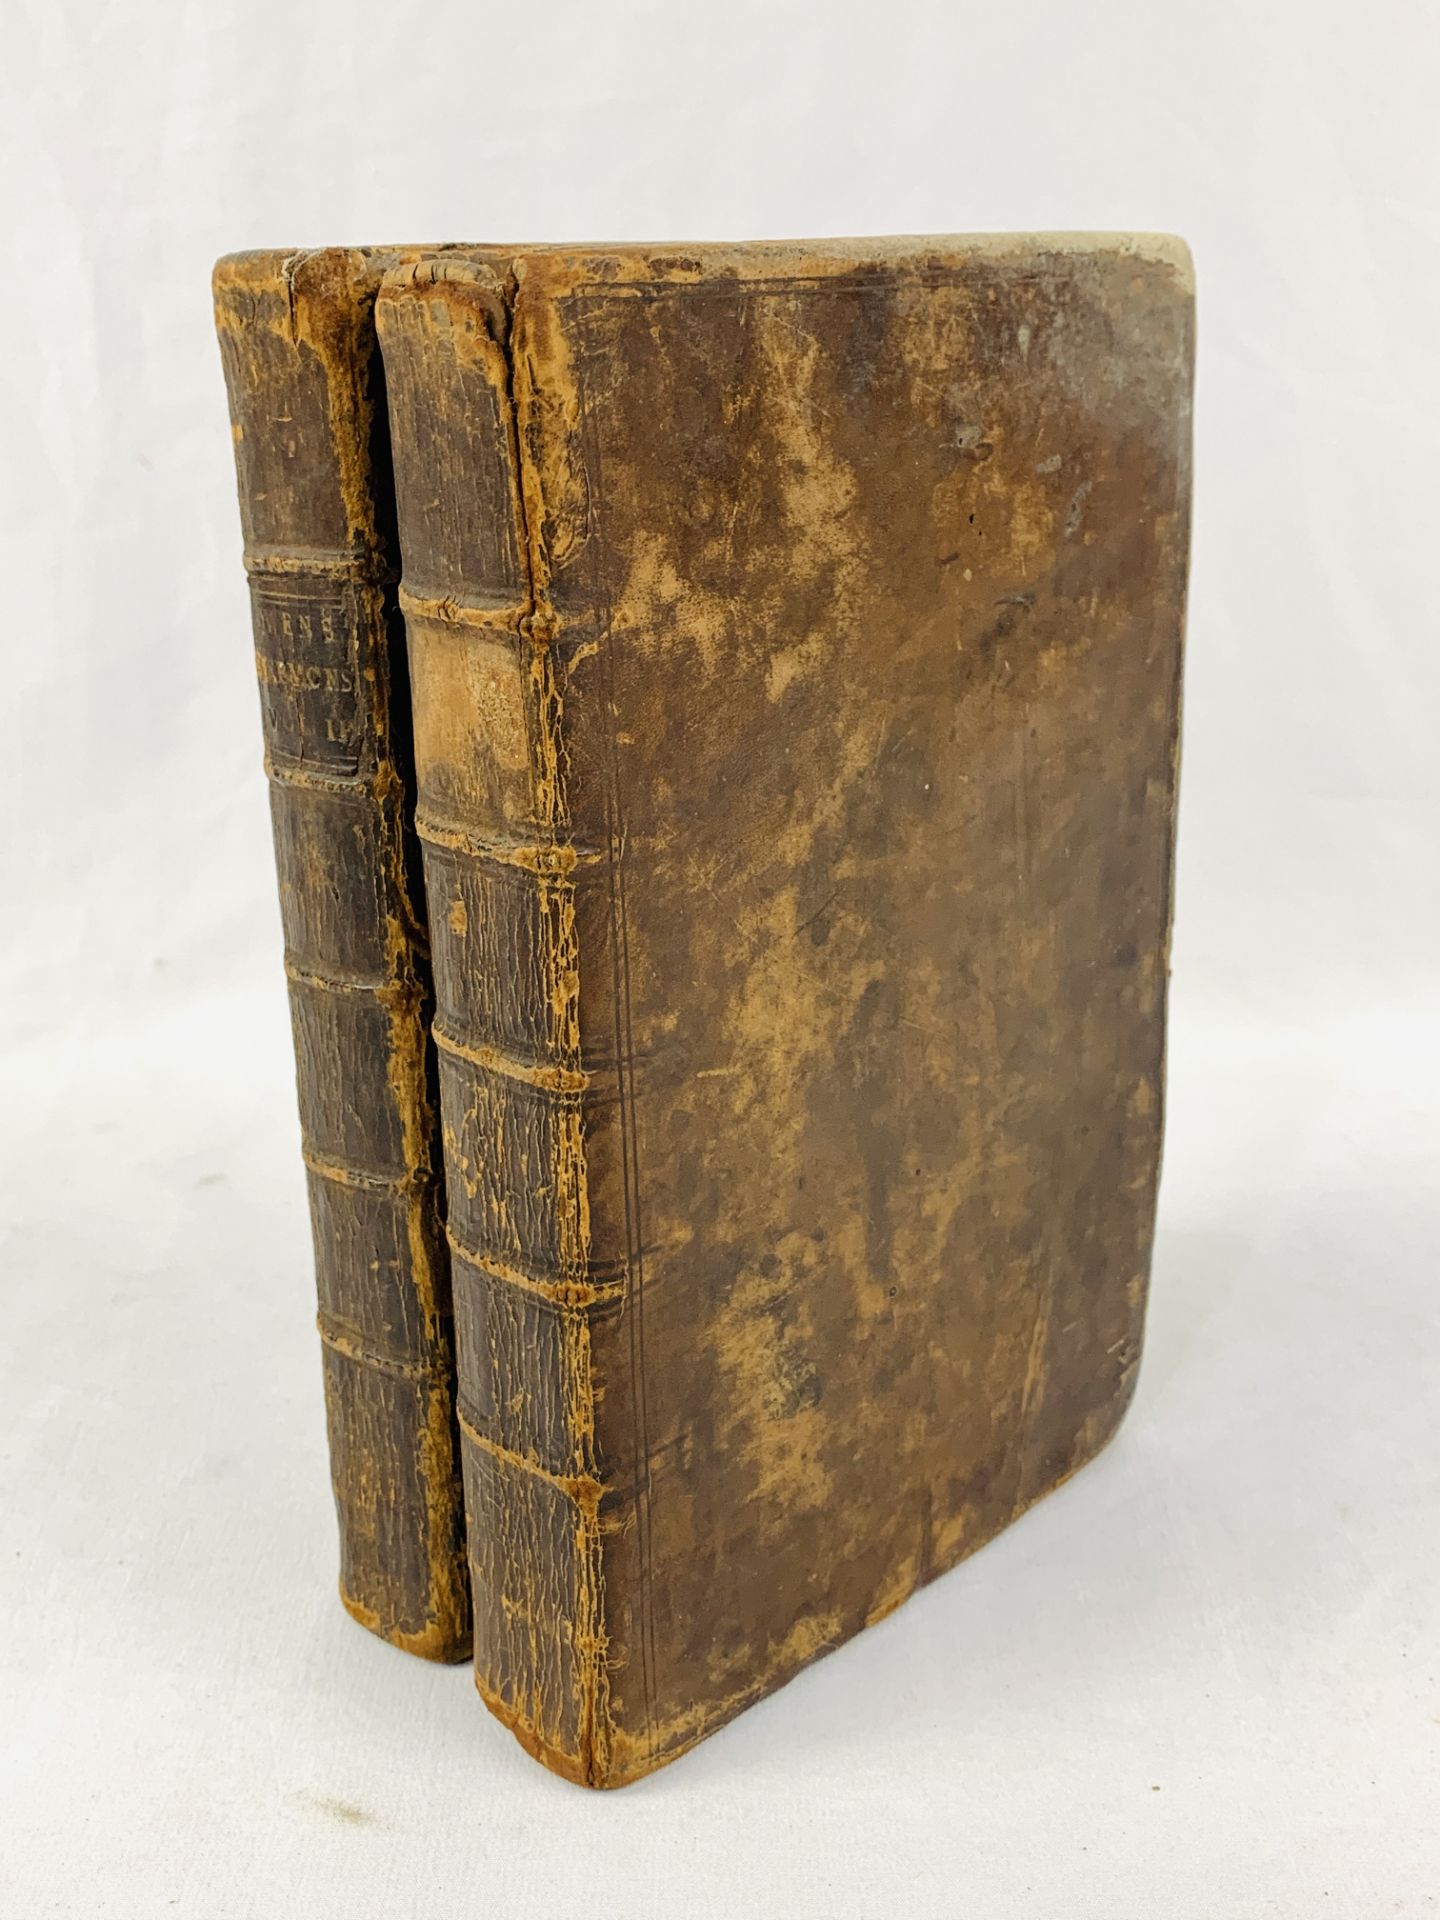 Seventeen Sermons Preach'd by the Reverend Dr John Owen, 2 volumes, 1720.